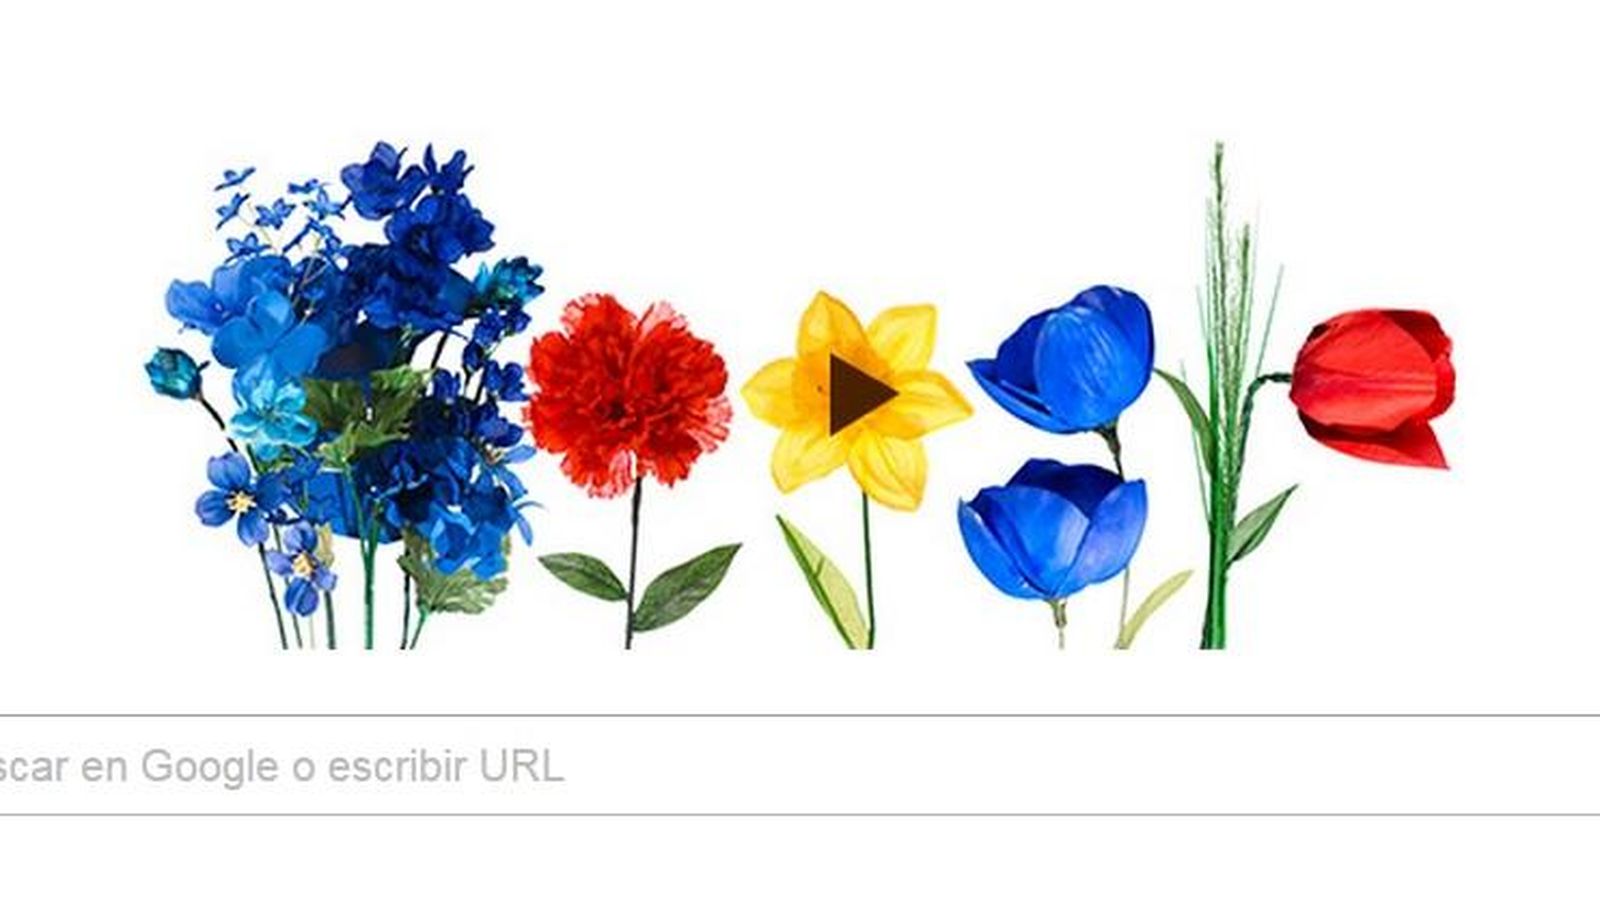 Foto: 'Doodle' de Google del 20 de marzo para recibir la llegada de la primavera